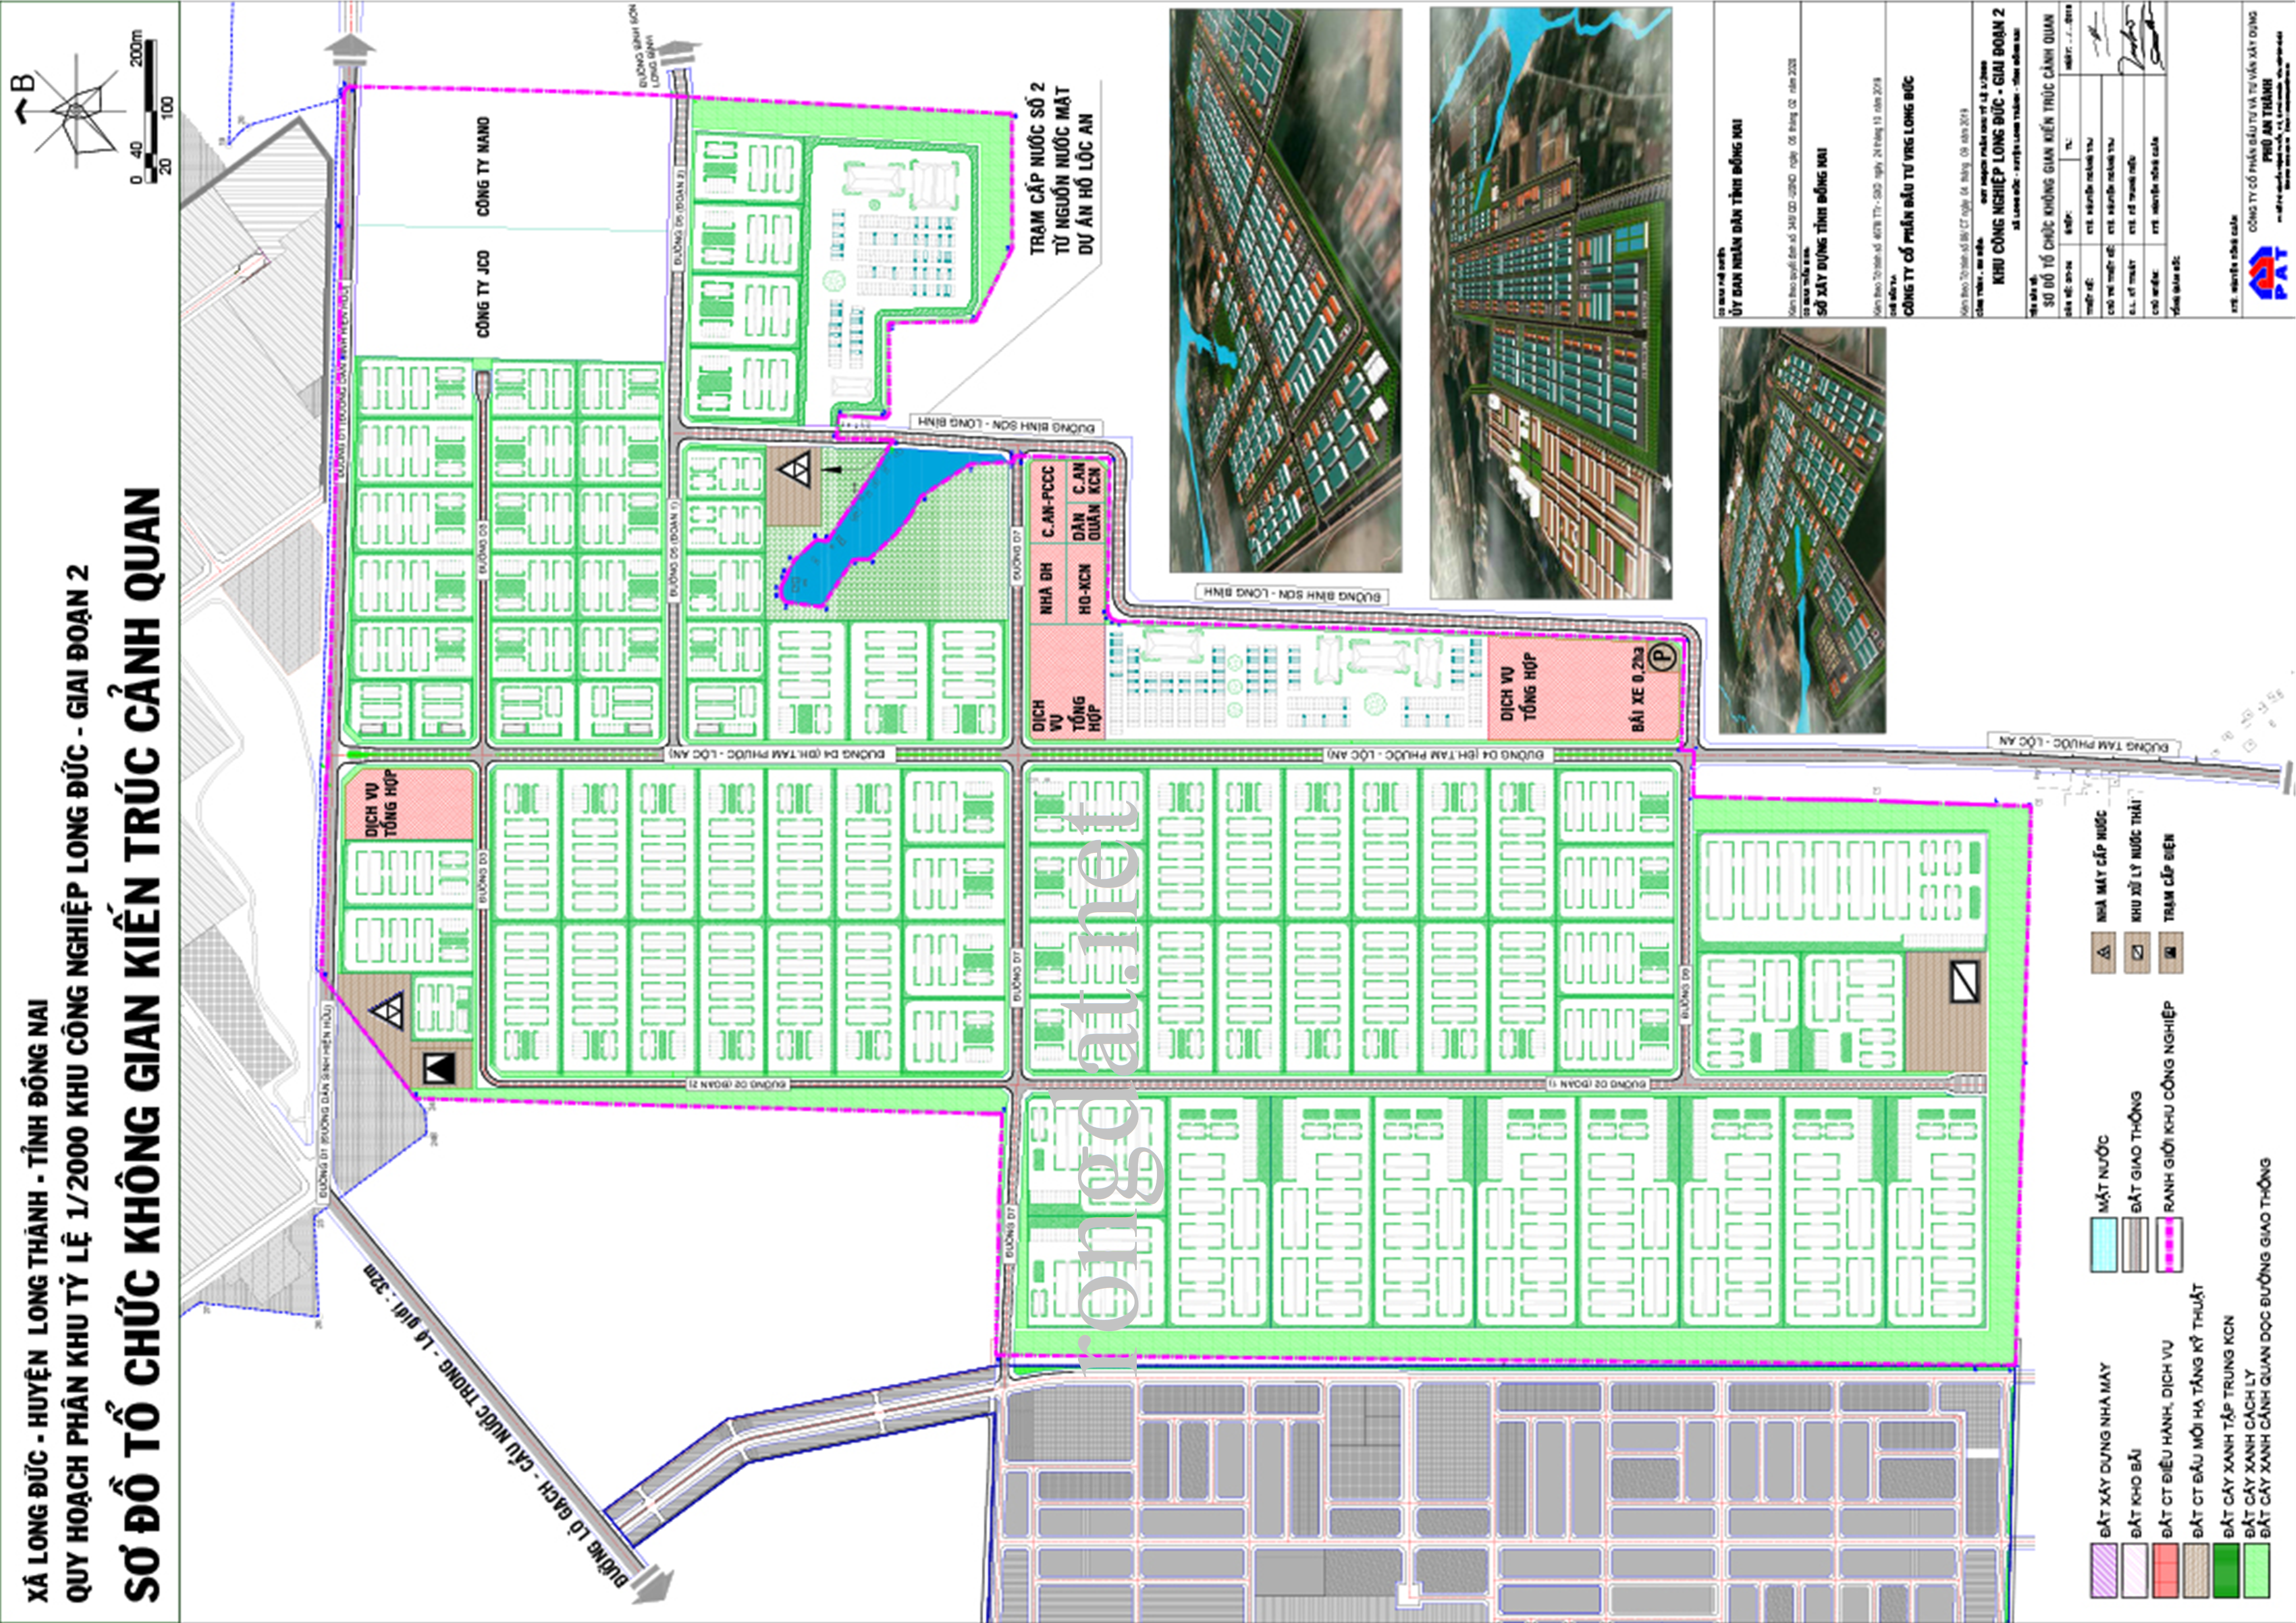 Quy hoạch khu công nghiệp Long Đức (giai đoạn 2) tại xã Long Đức, huyện Long Thành, tỉnh Đồng Nai